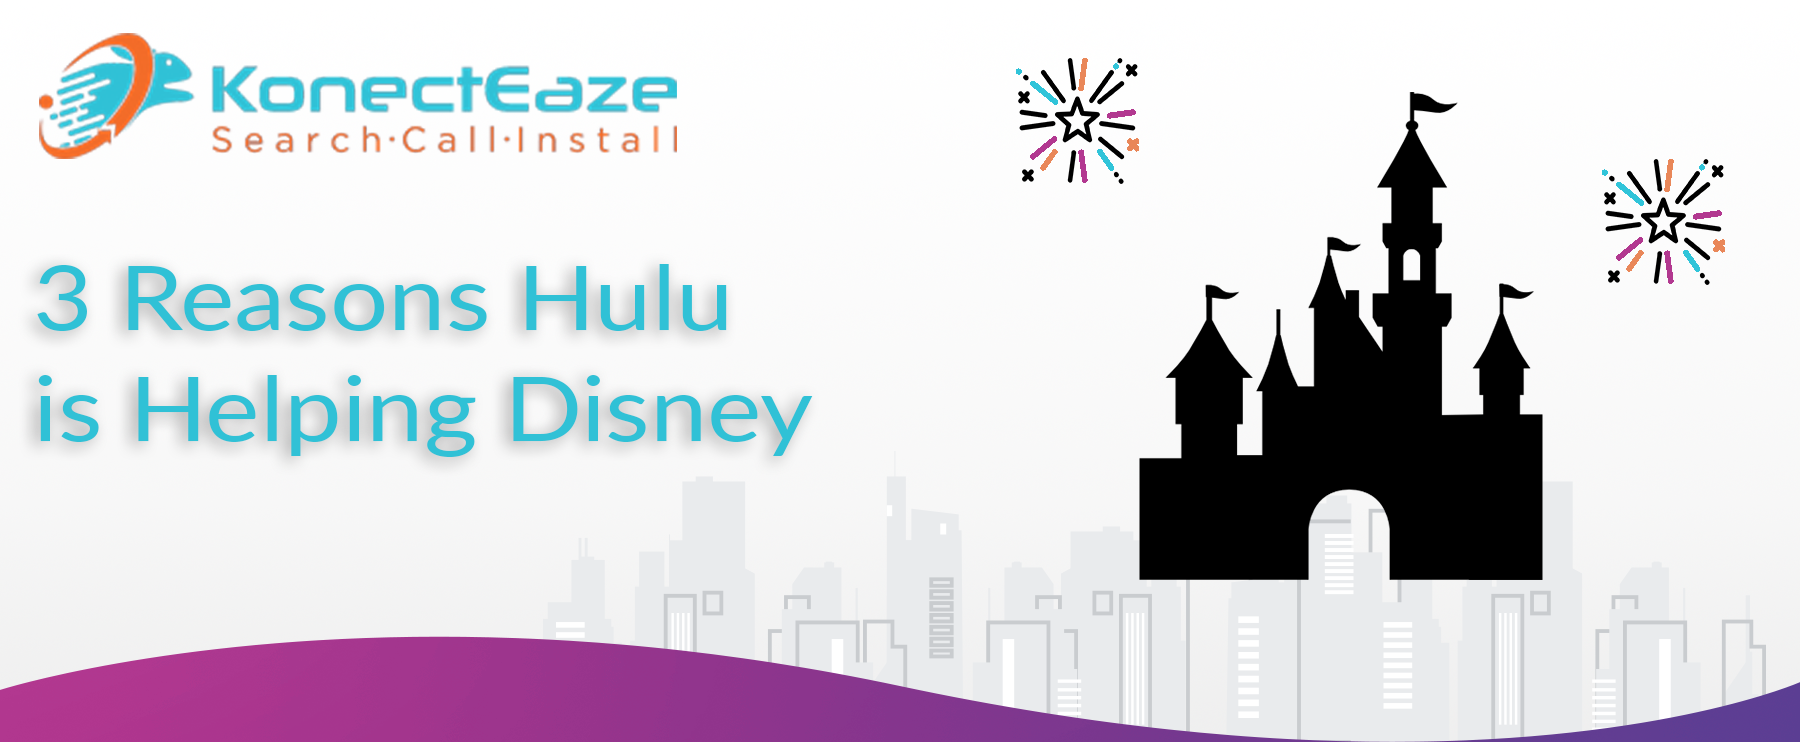 3 Reasons Hulu is Helping Disney